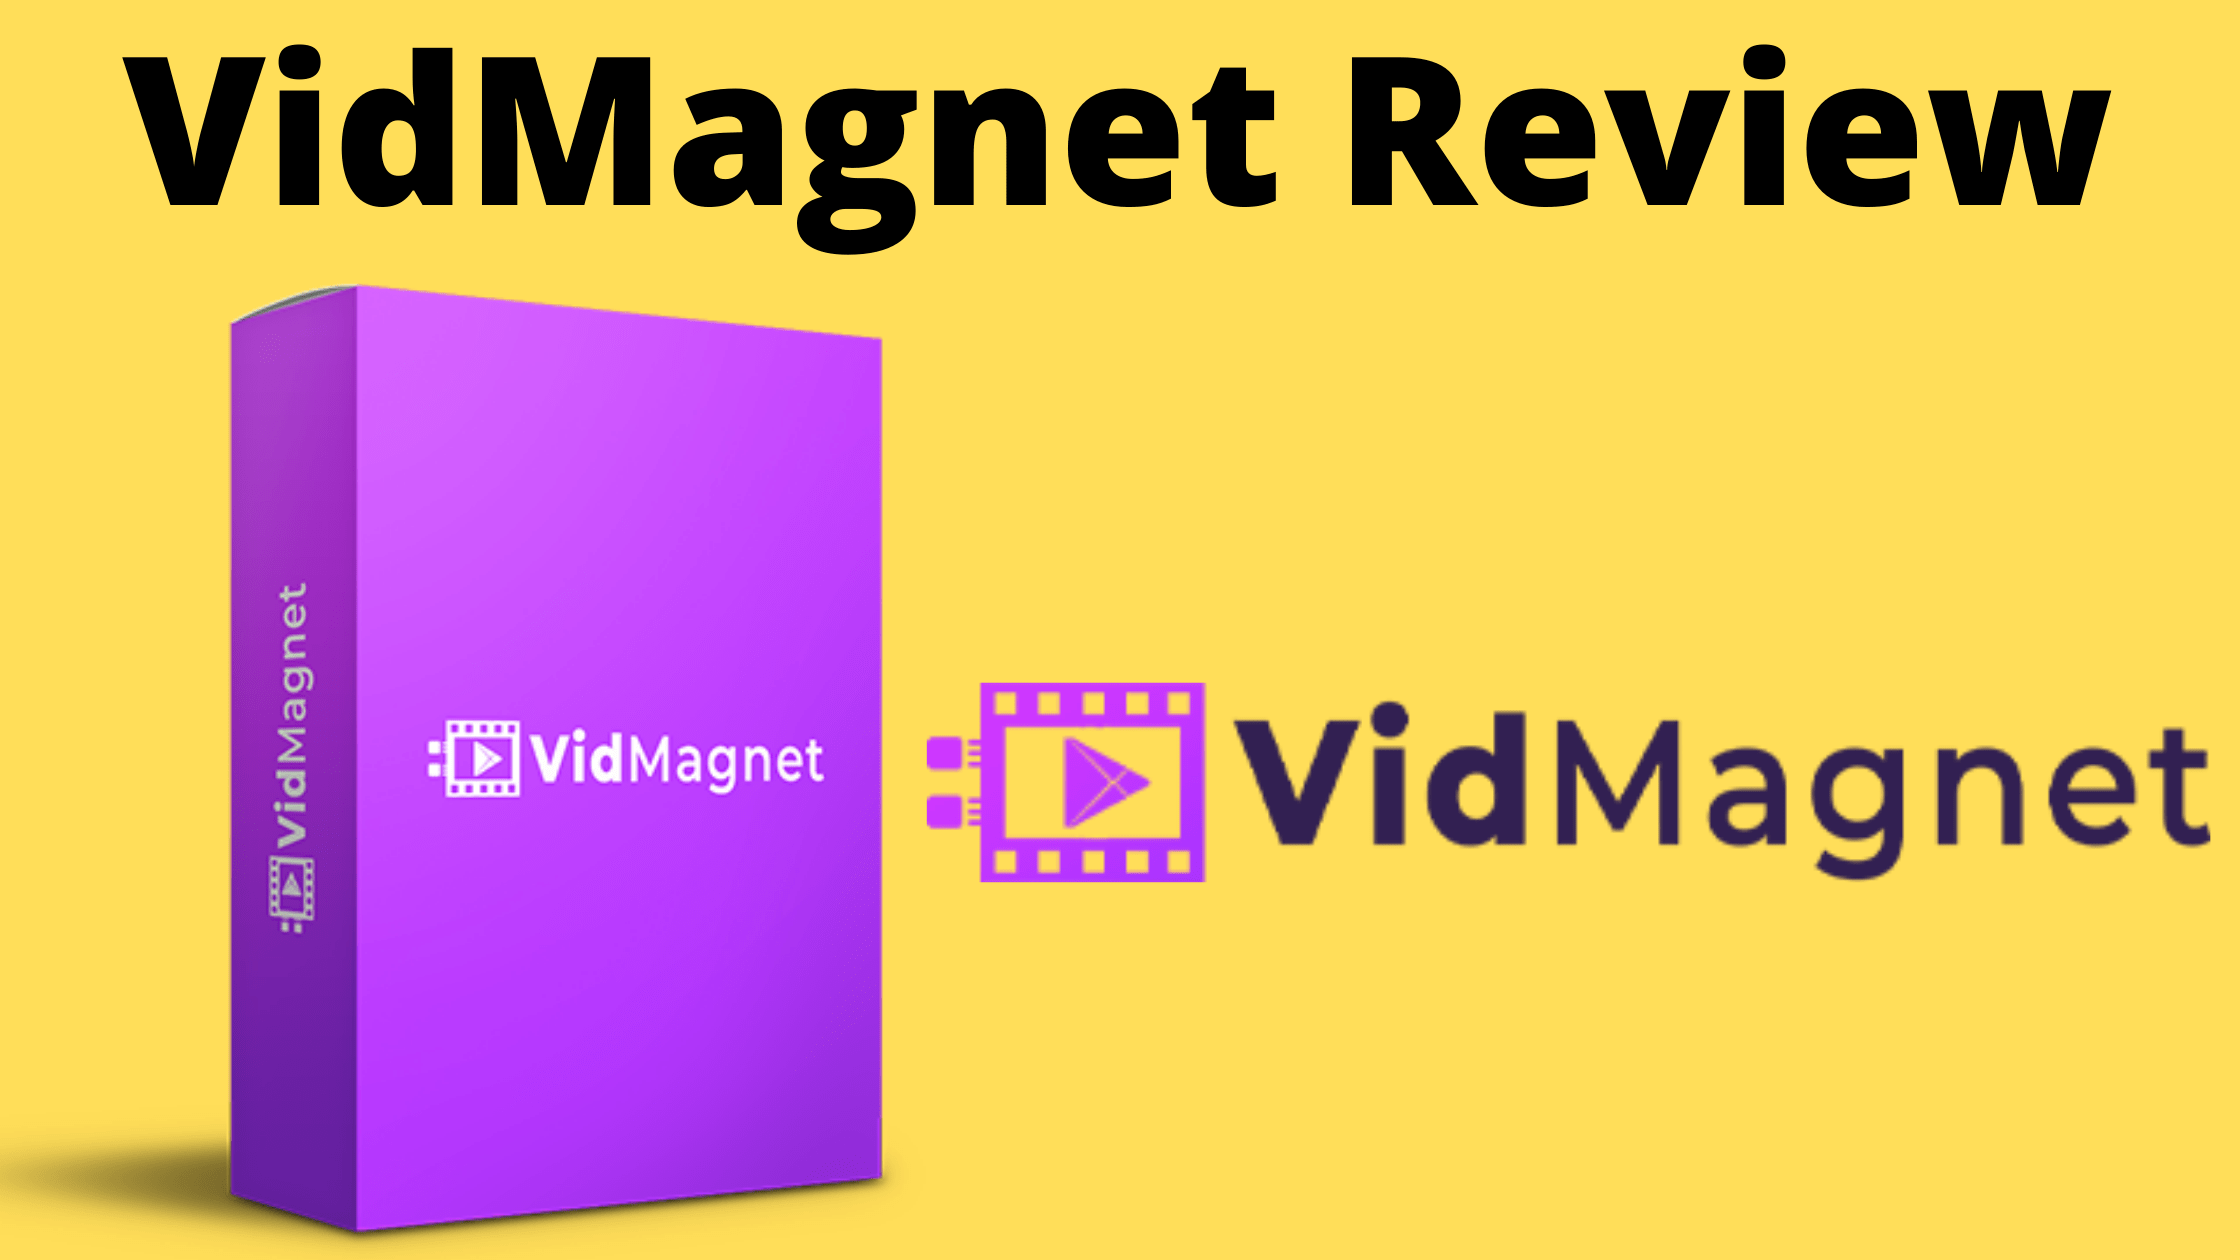 VidMagnet Review